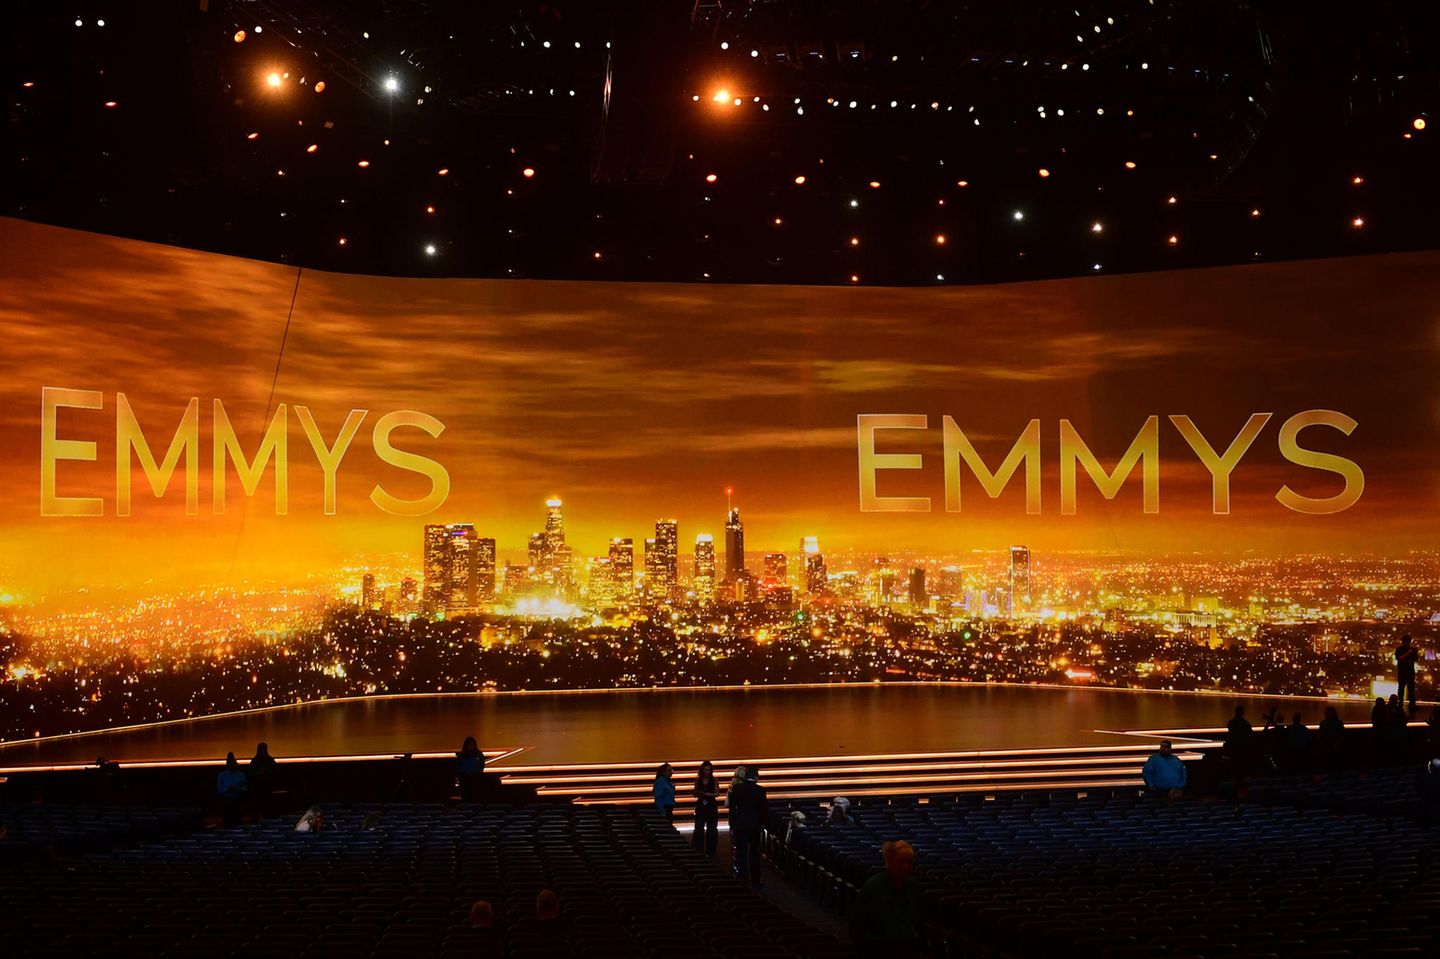 Wie schon bei den Oscars gibt es auch bei der diesjährigen Emmy-Verleihung keinen Moderator, sondern viele einzelne Präsentatoren. Dafür ist die Bühne des Microsoft Theatres in Los Angeles ums größer.